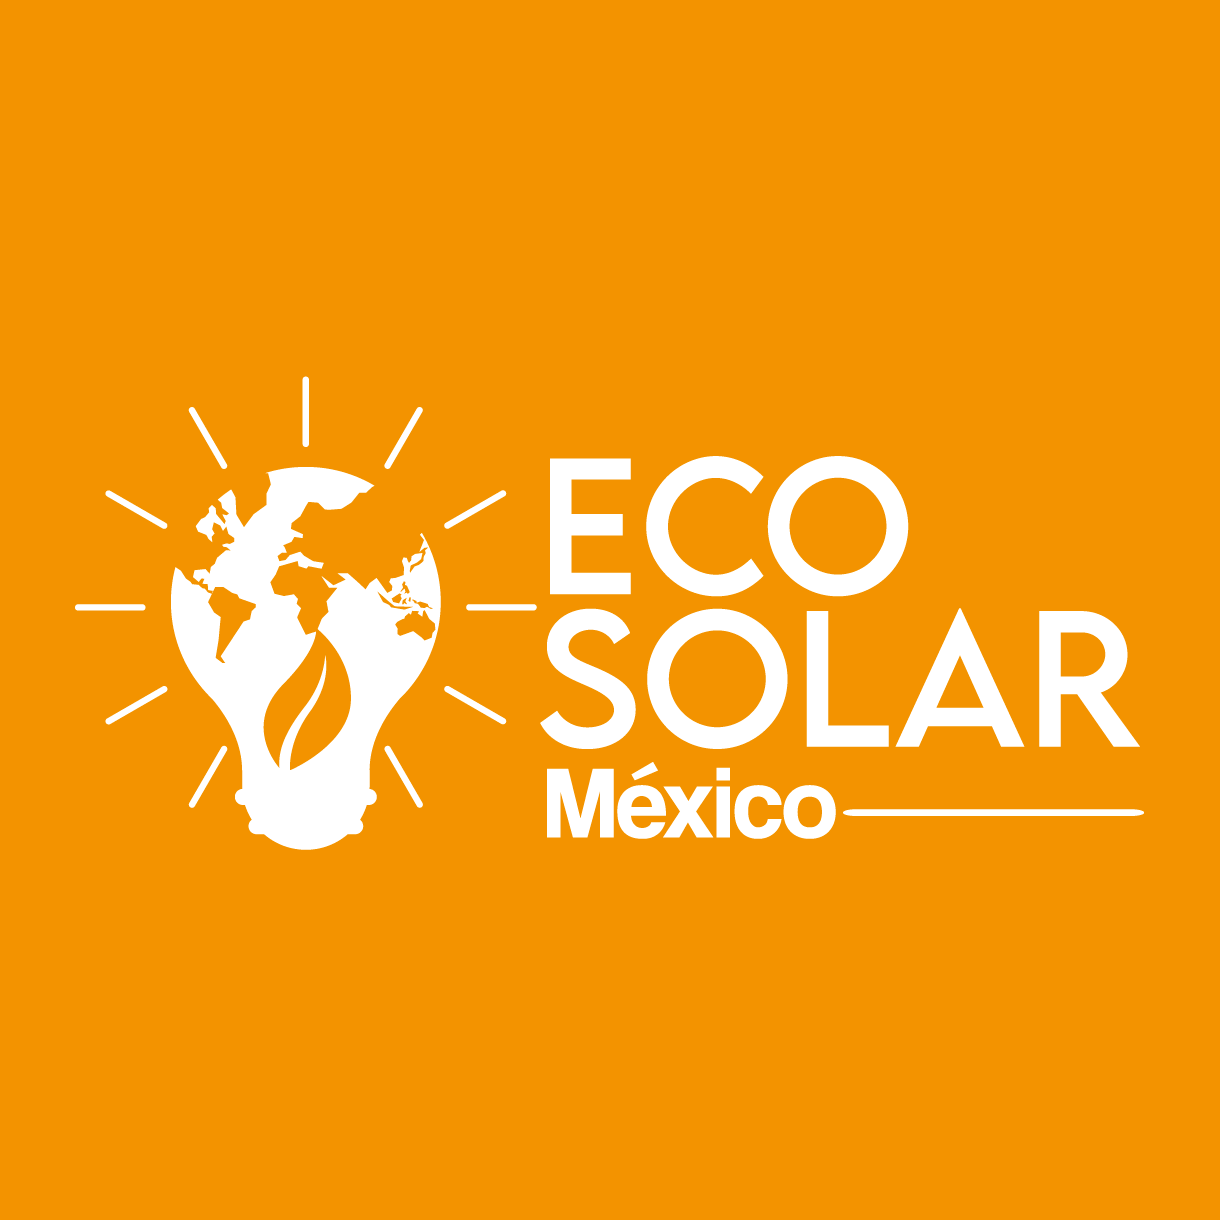 Eco Solar Mexico San Luis Potosí